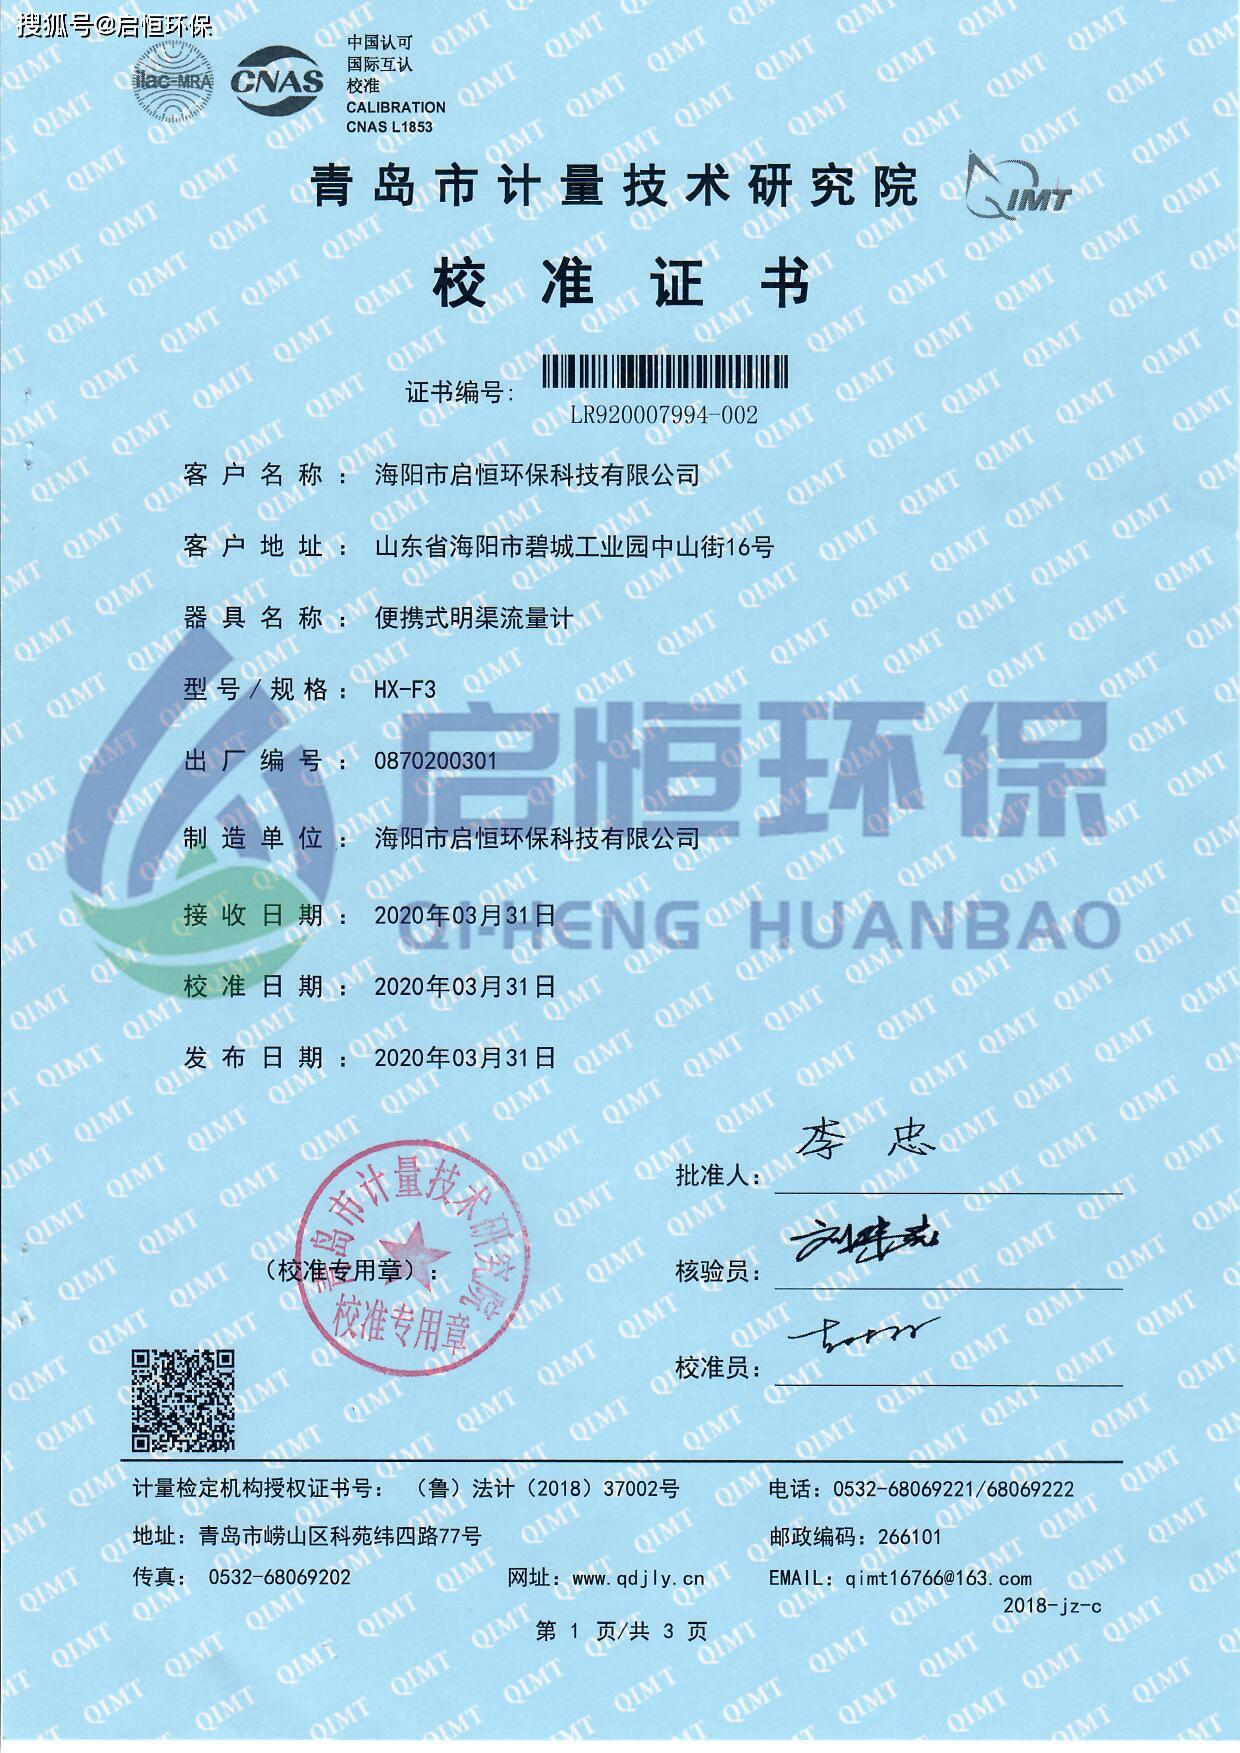 便携式明渠流量计校准证书为贯彻《中华人民共和国环境保护法》和